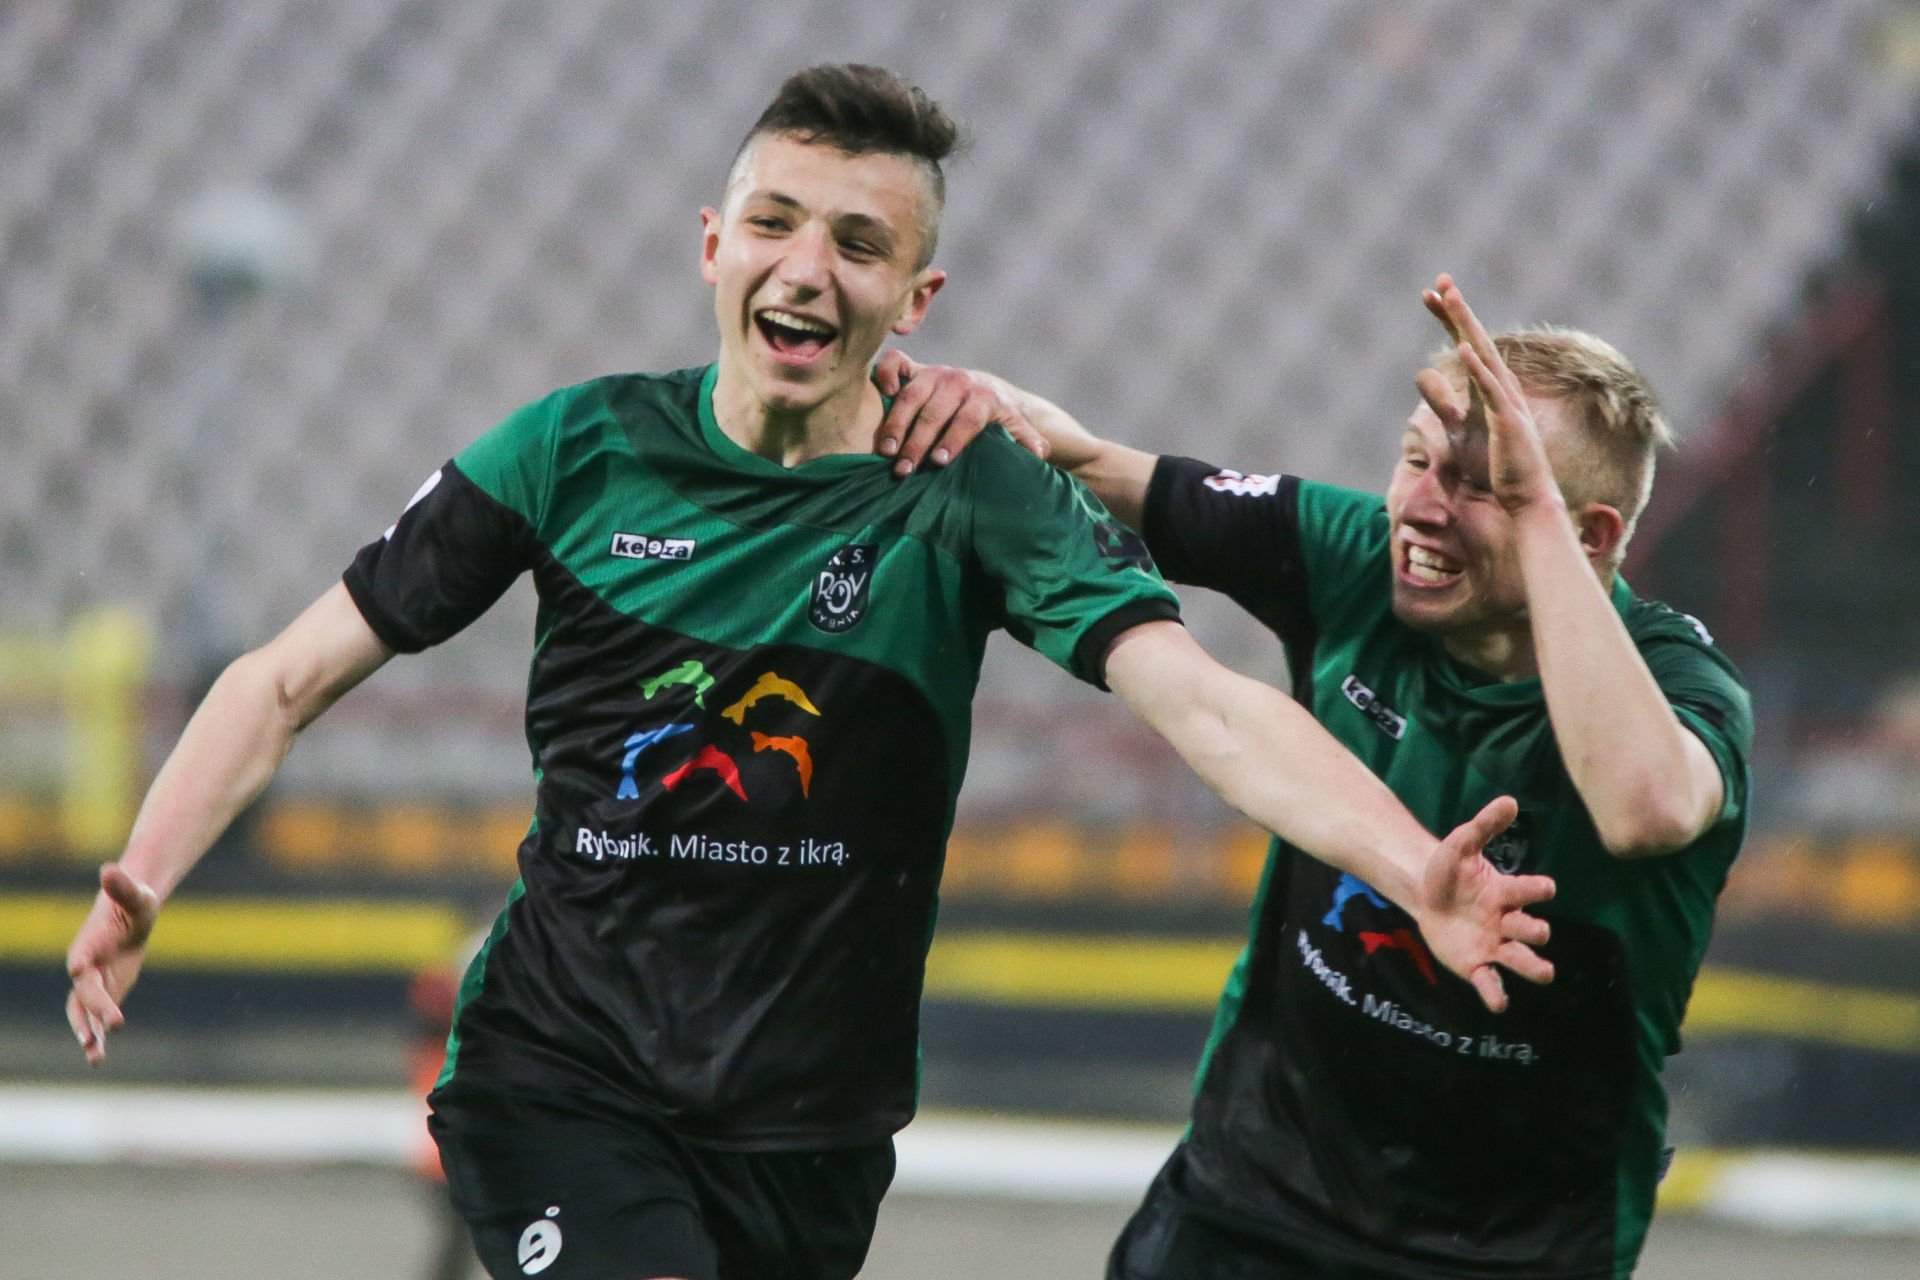 Kwiecień 2016 roku, Bartosz Slisz cieszy się z premierowego gola dla ROW-u Rybnik w swoim pierwszym występie w wyjściowym składzie. 